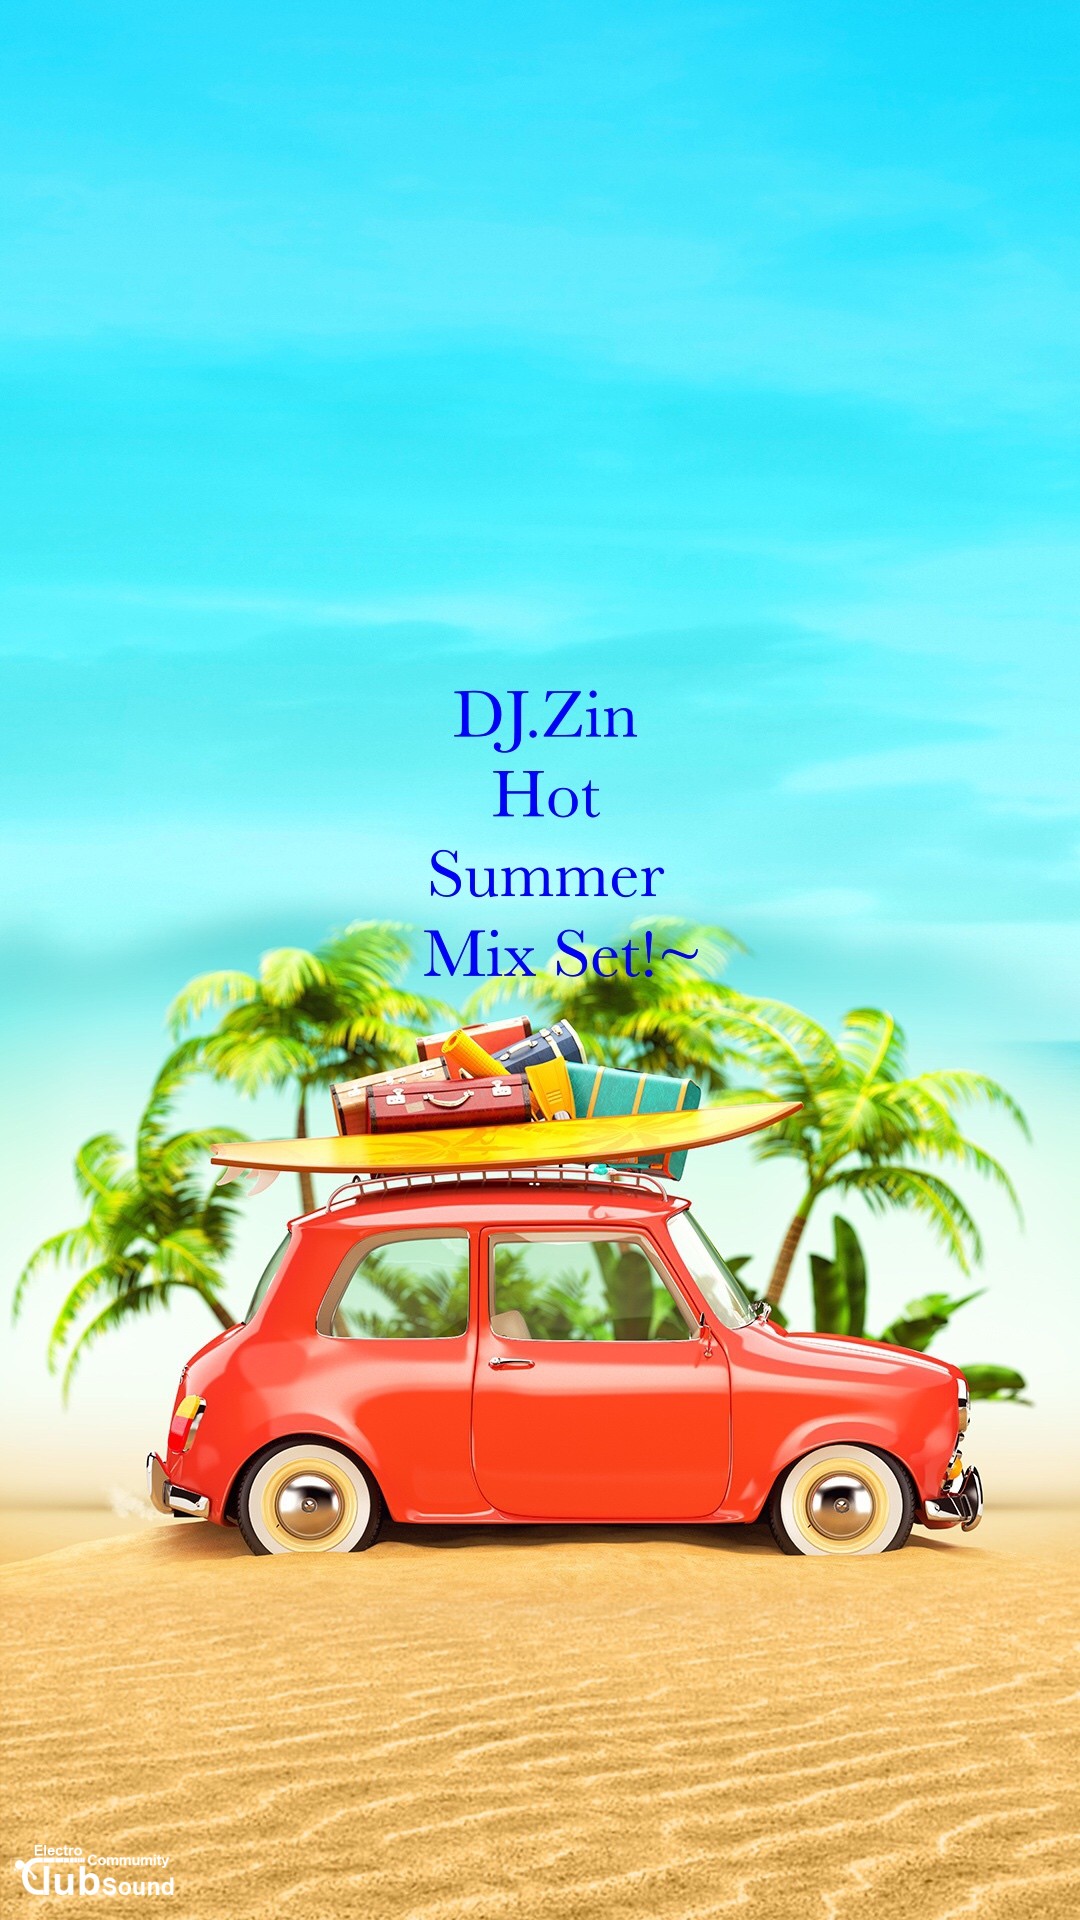 IMG_1272_Fotor.jpg : 가볍게 댄스!~DJ.Zin - 2016.Hot Summer Mix